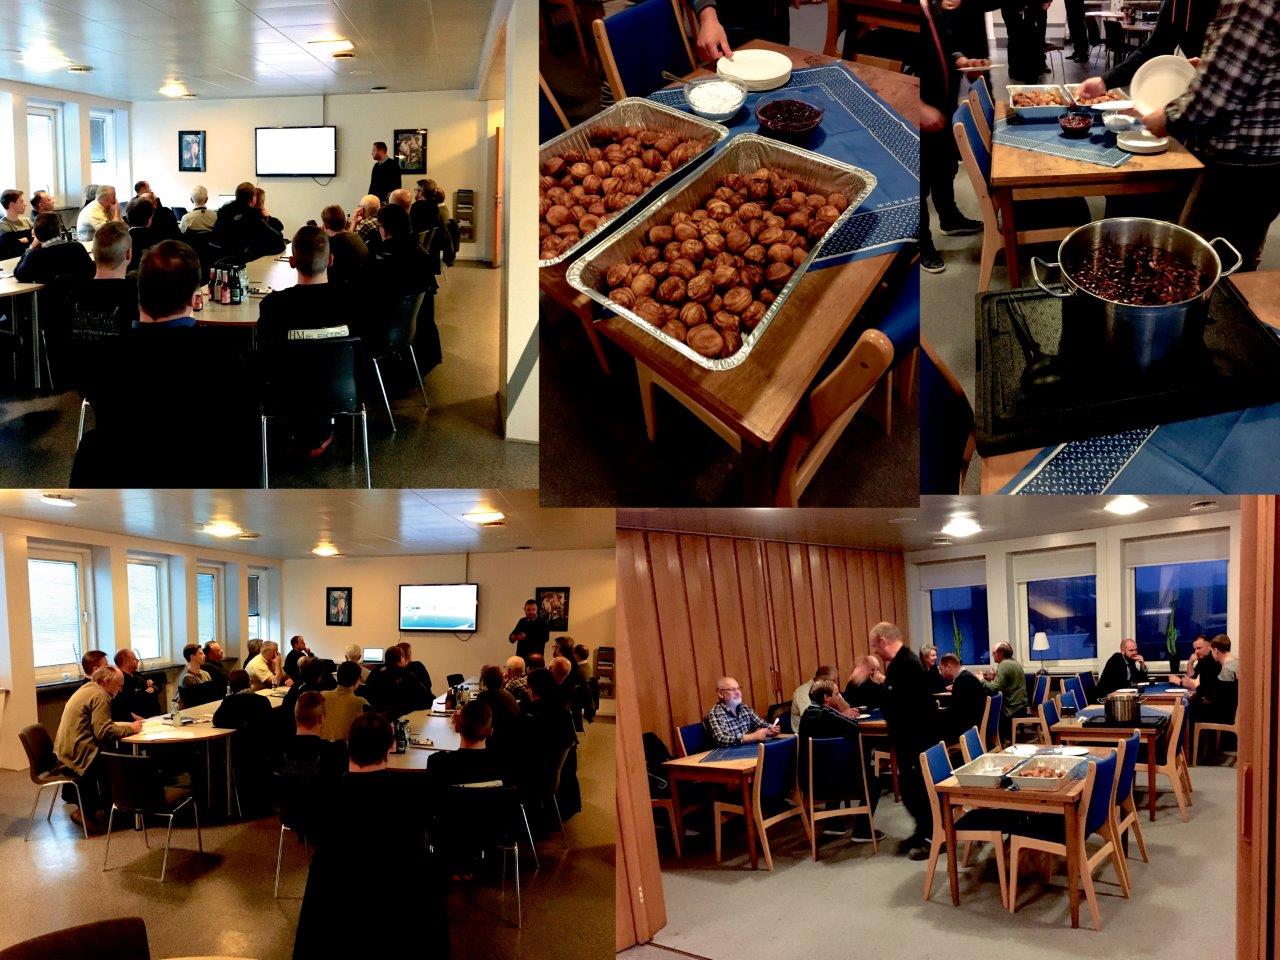 32 medlemmer af Hanstholm Maritime Service Network hørte FF Skagen fortælle om byggeplaner på havnen og Aarsleff fortælle om havnebyggeriet